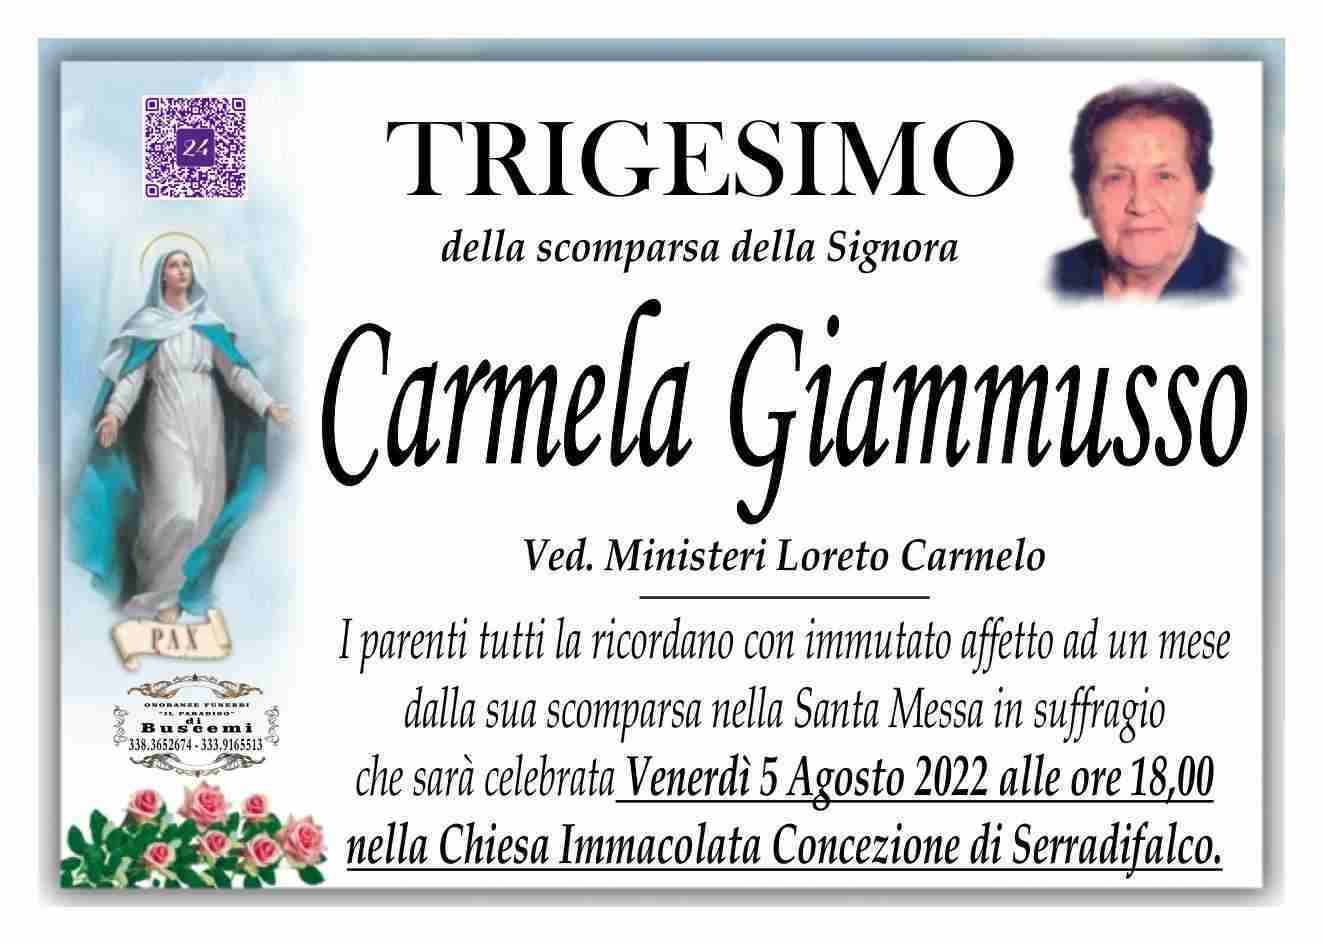 Carmela Giammusso